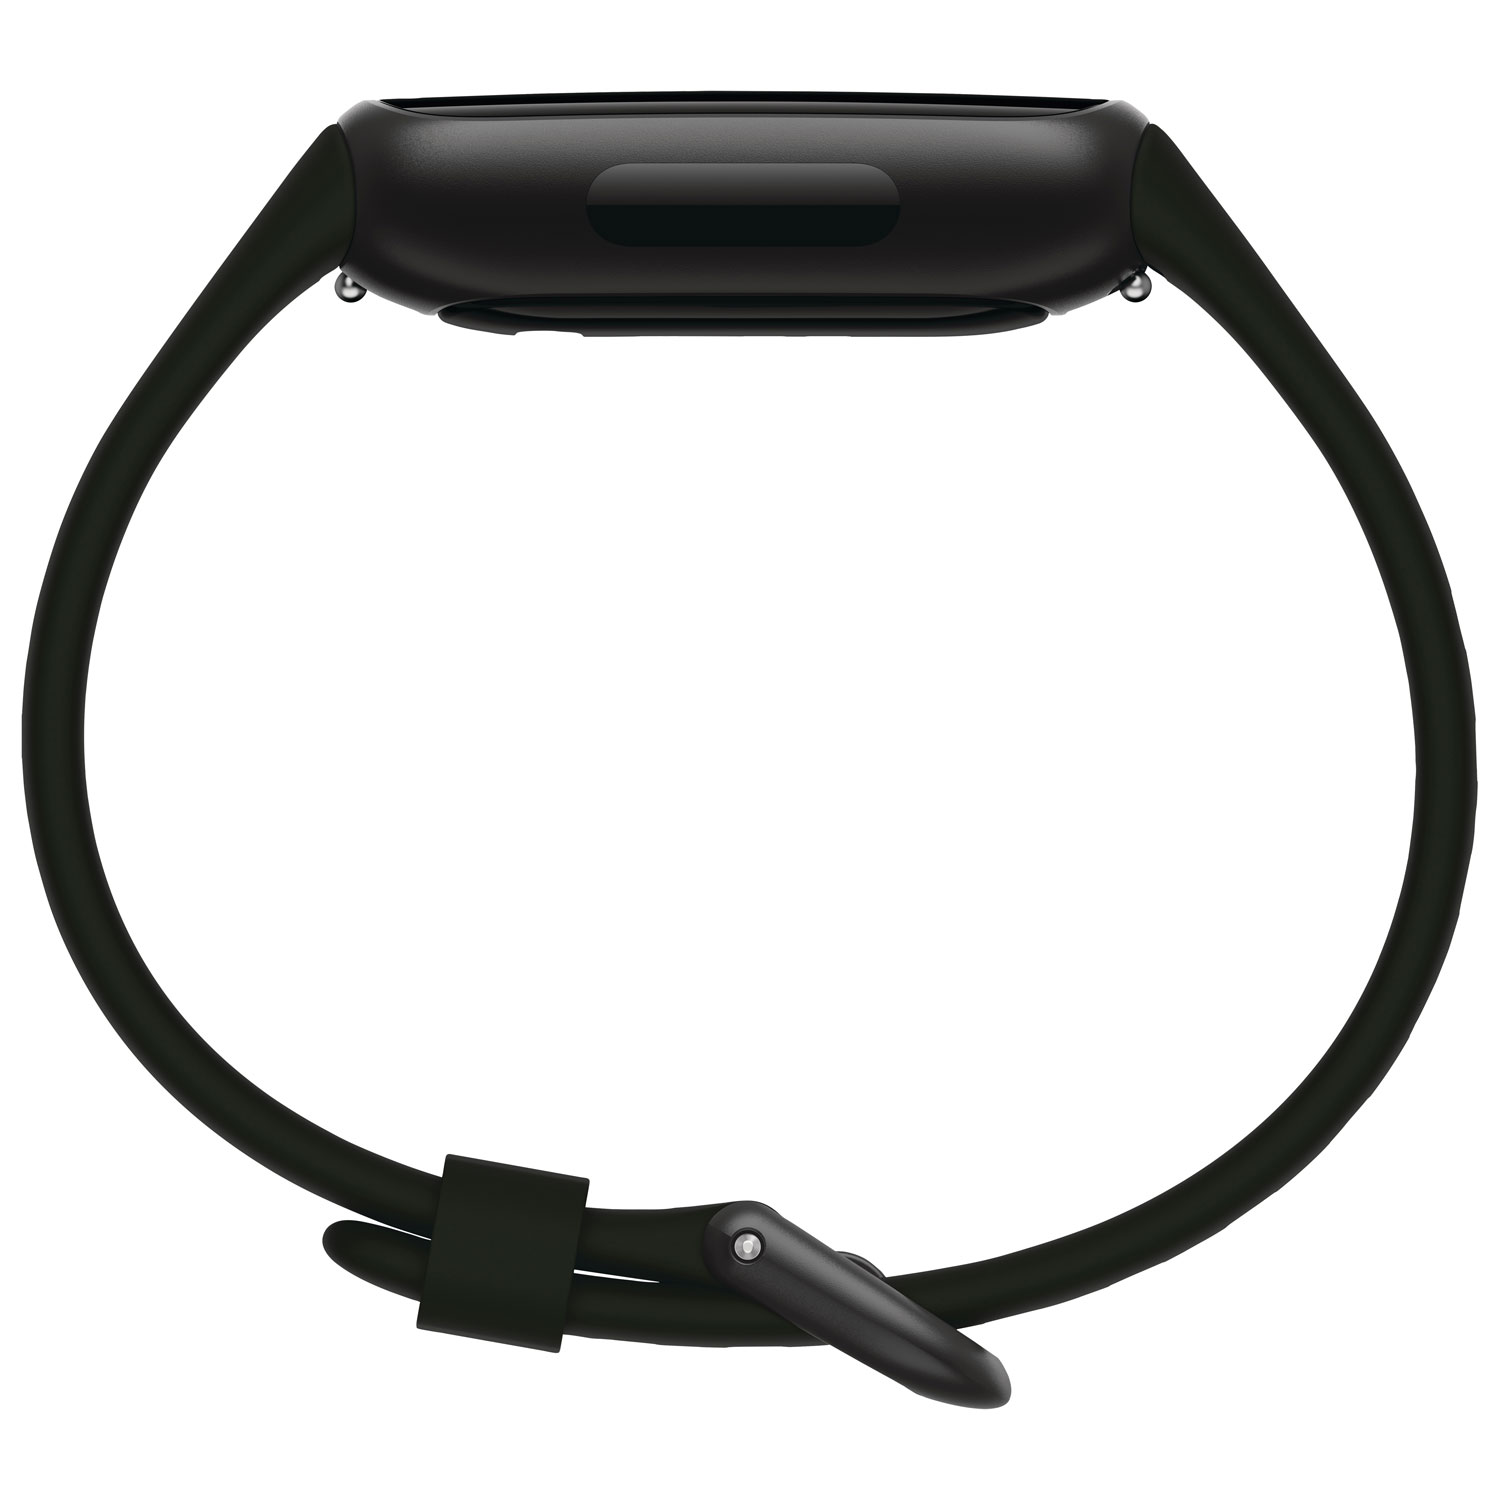 Bracelet d'activité Inspire 3 de Fitbit - Noir avec bracelet Lilas